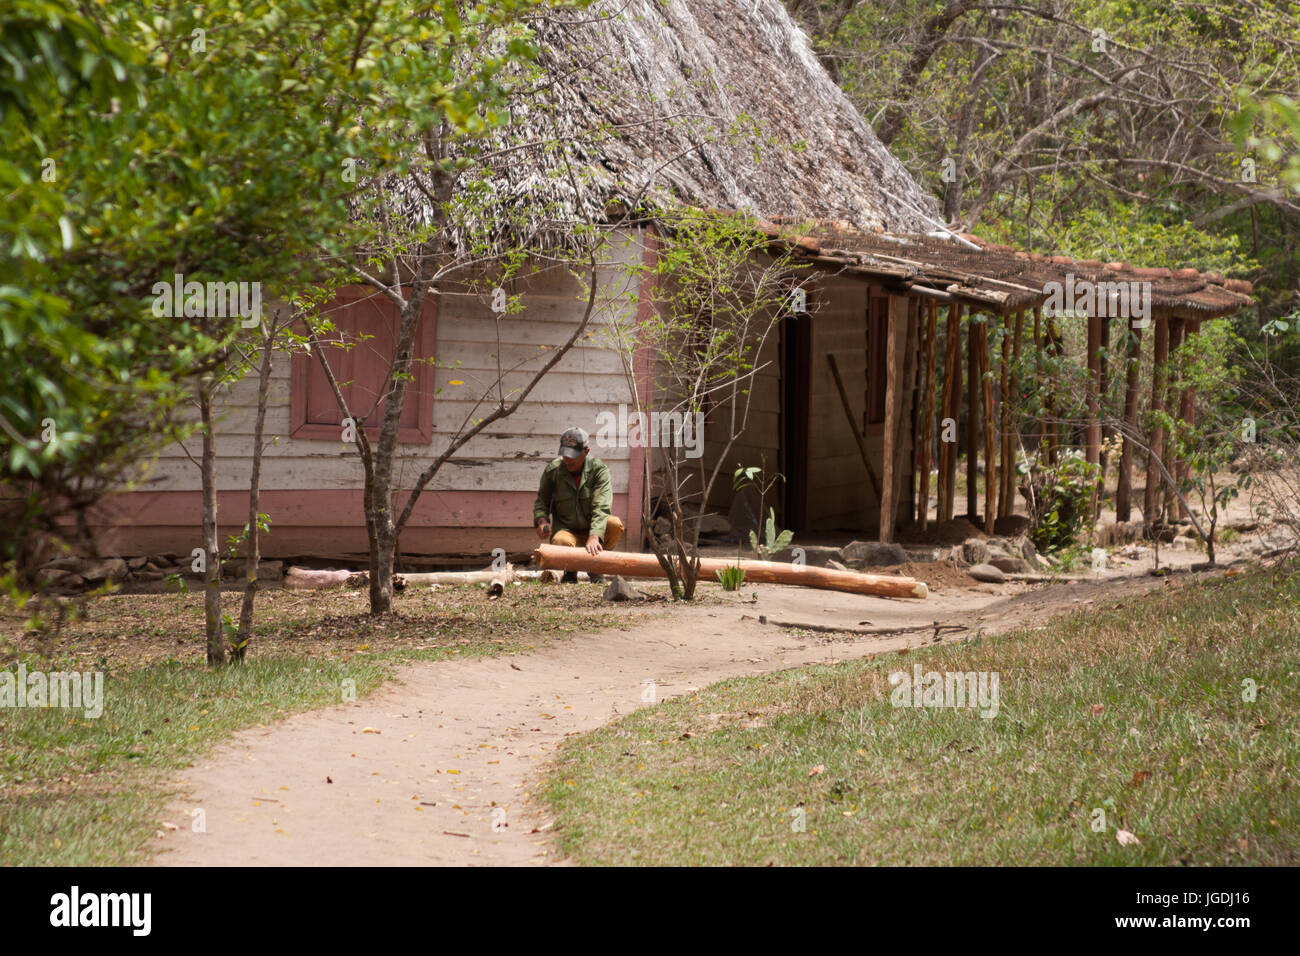 Alter Mann Einstellungsdialog mit einer Machete in einem Holzhaus Trinidad, Kuba Stockfoto